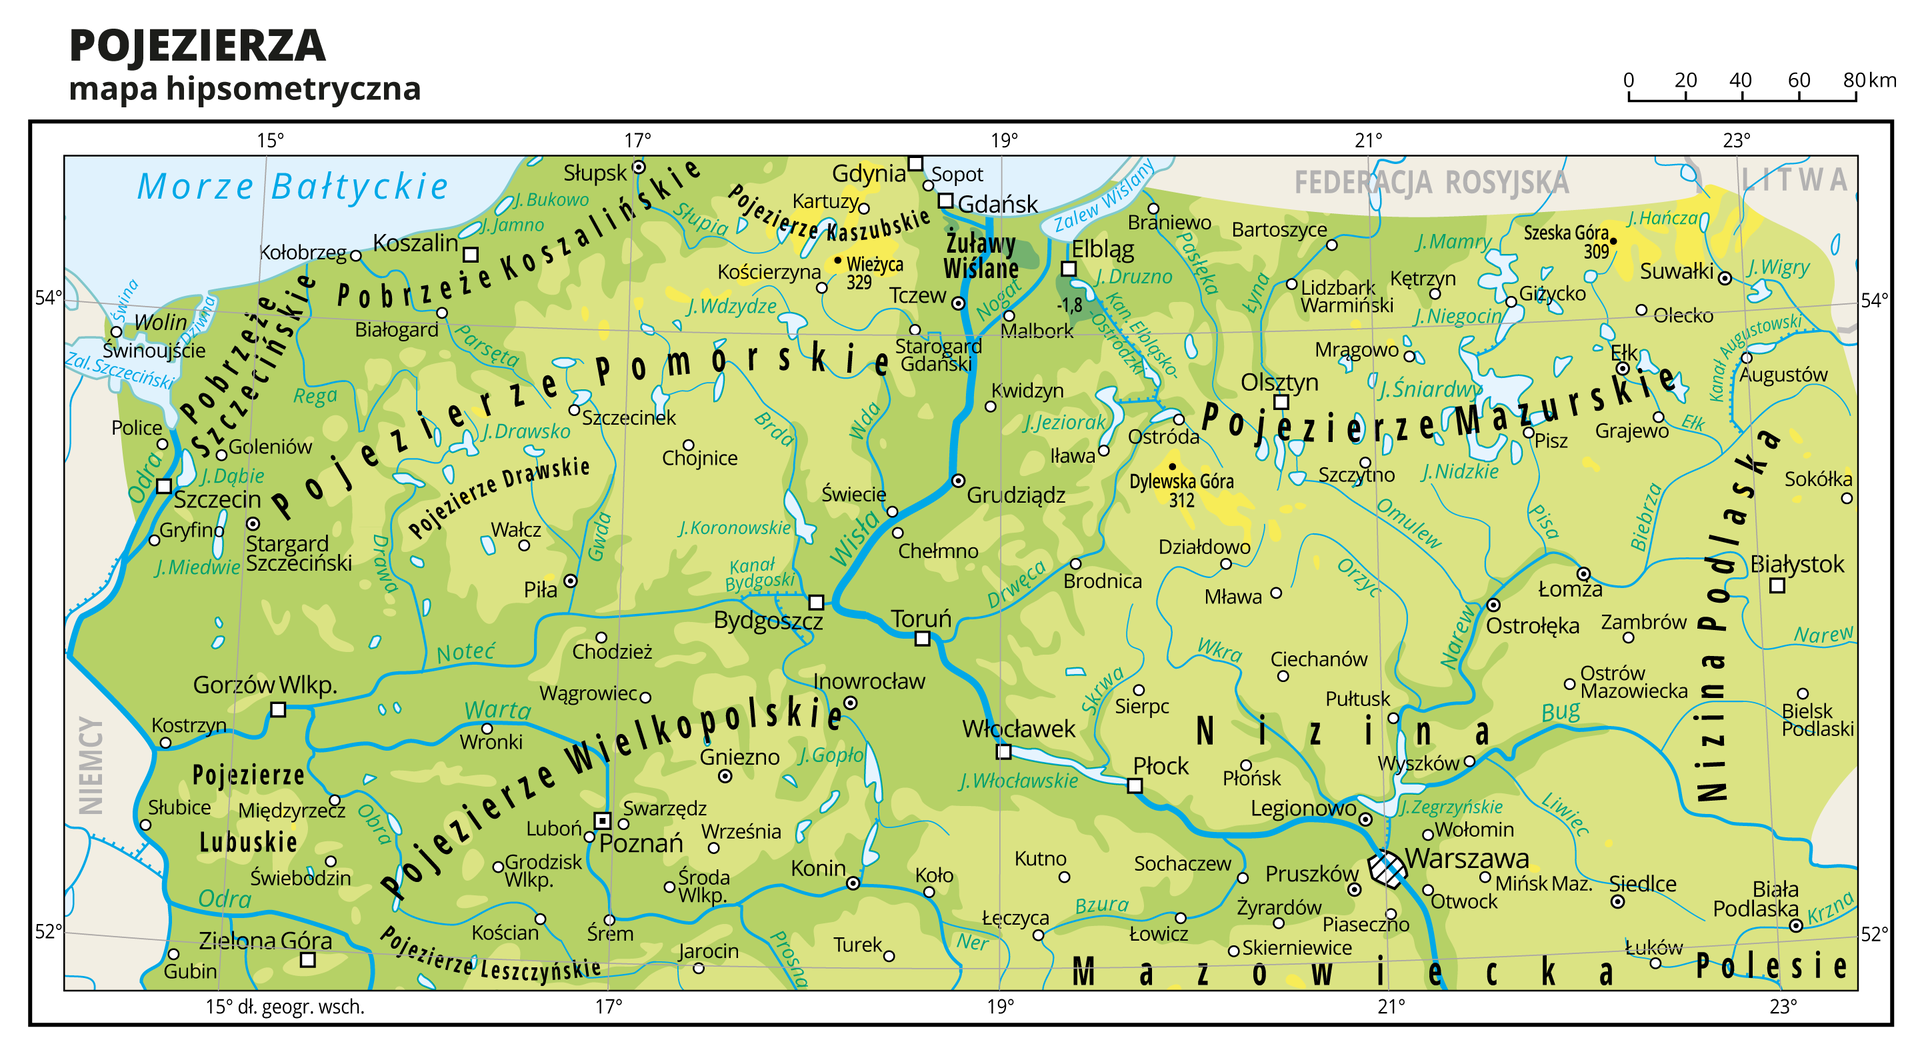 Ilustracja przedstawia mapę fragmentu Polski: mapę hipsometryczną pojezierzy. Na mapie dominuje kolor zielony. Oznaczono i opisano miasta, rzeki, jeziora i szczyty. Opisano niziny, pobrzeża i pojezierza, morze, zalewy i wyspy. Opisano państwa sąsiadujące z Polską. Dookoła mapy w białej ramce opisano współrzędne geograficzne co dwa stopnie.